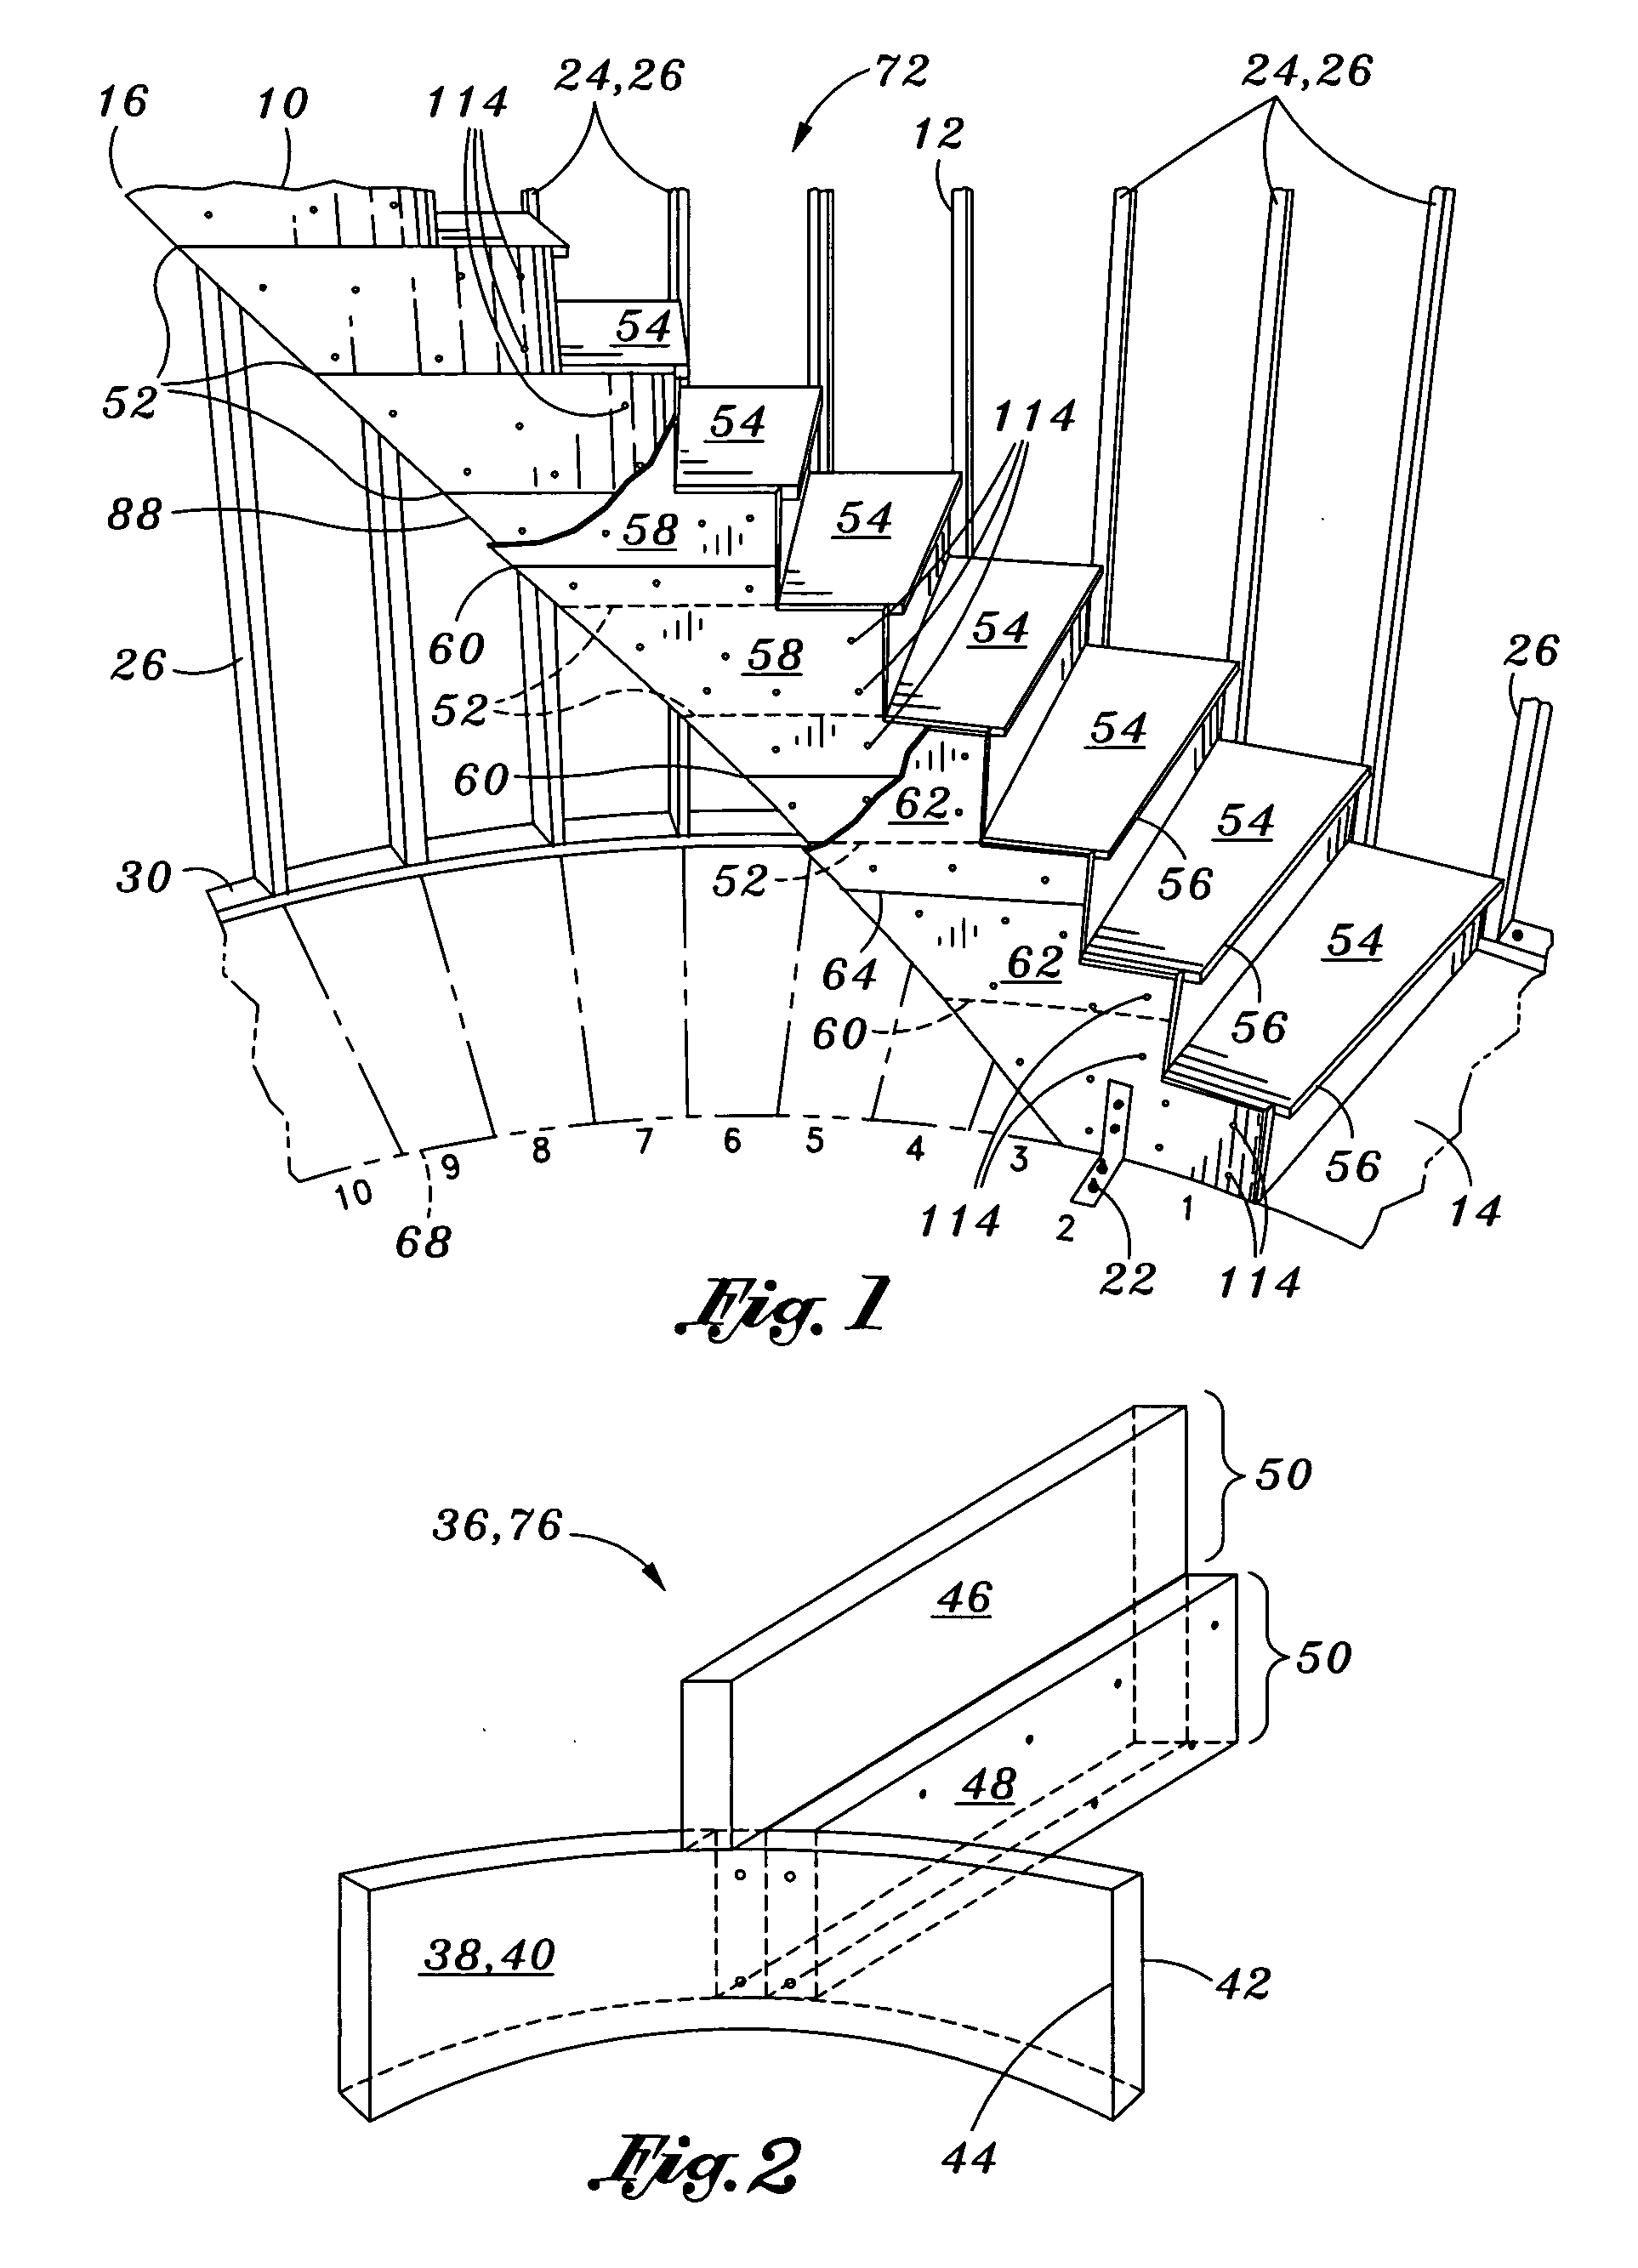 Modular staircase kit